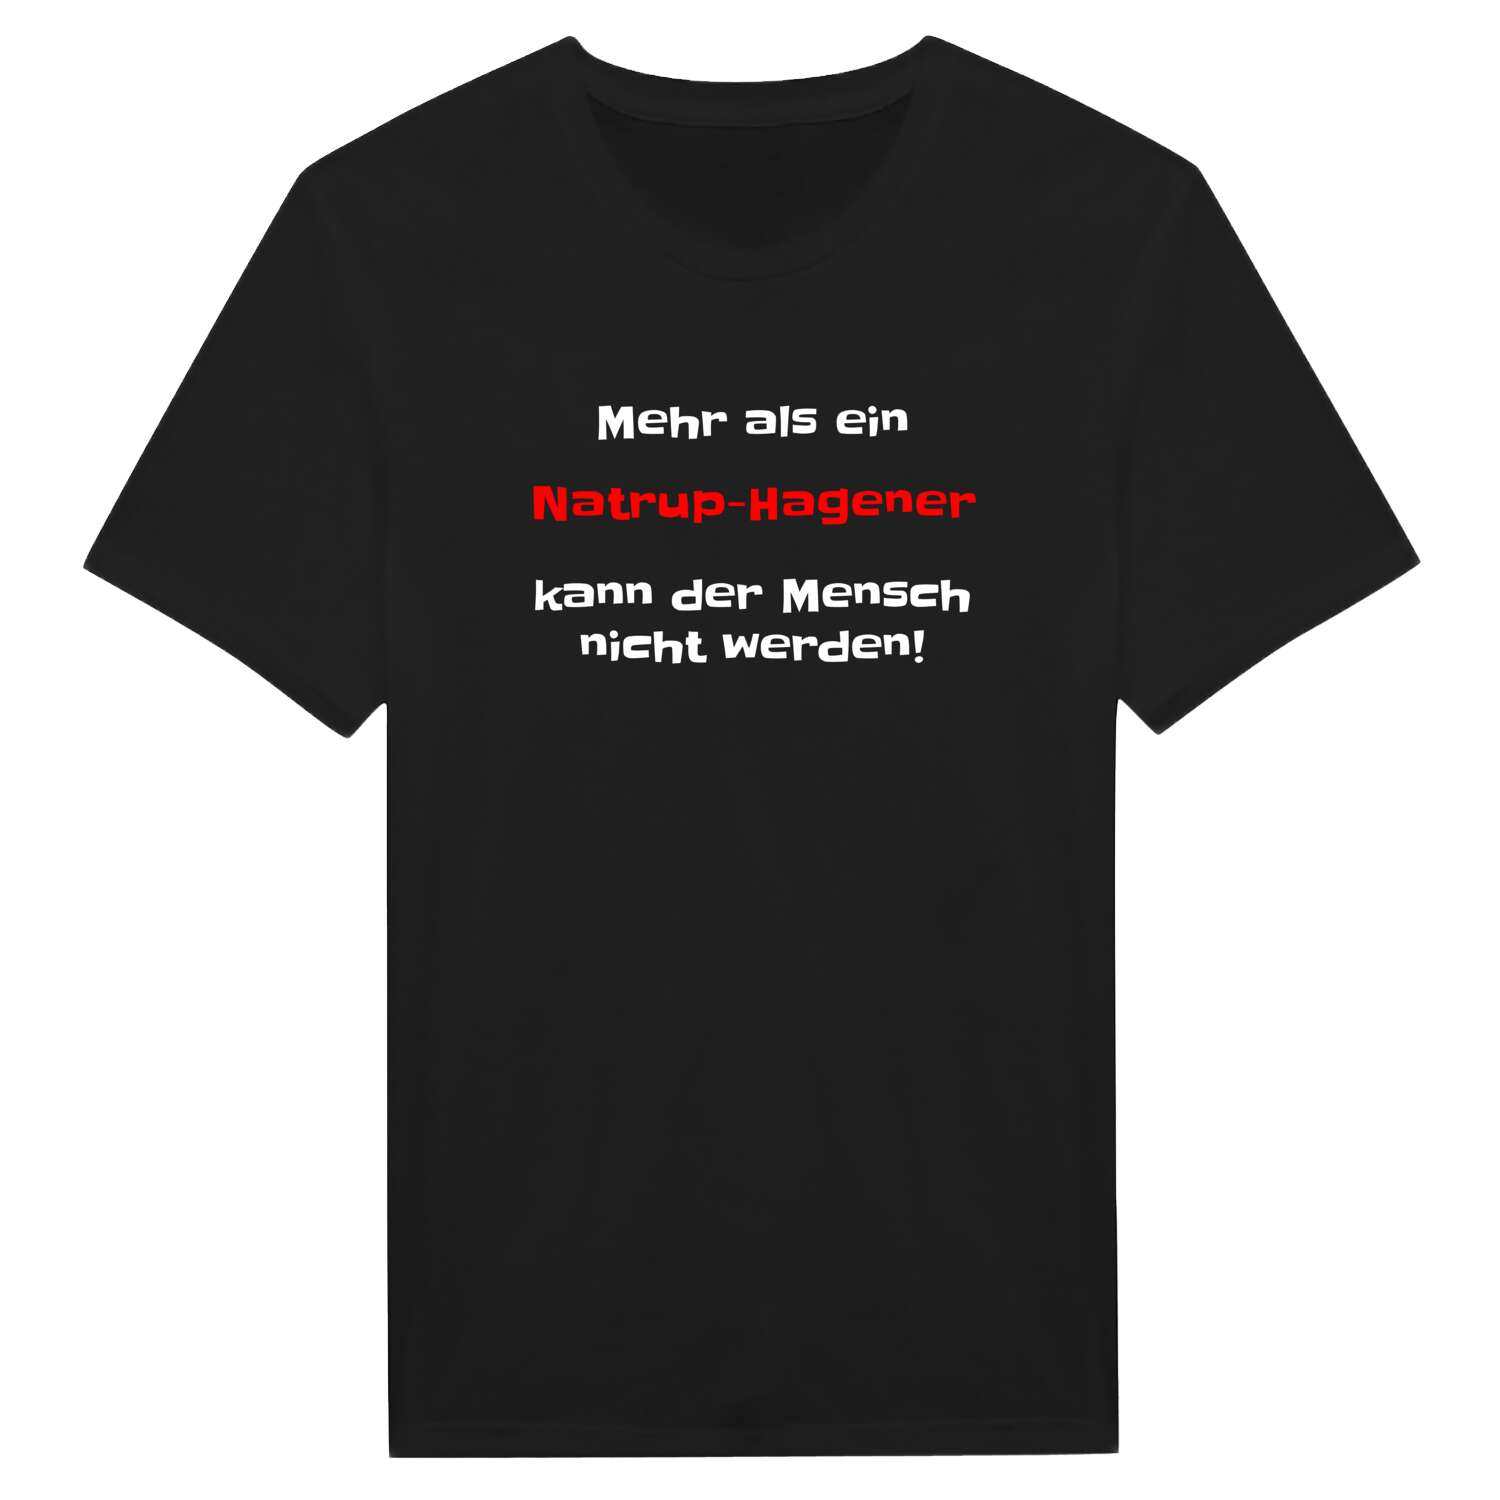 Natrup-Hagen T-Shirt »Mehr als ein«